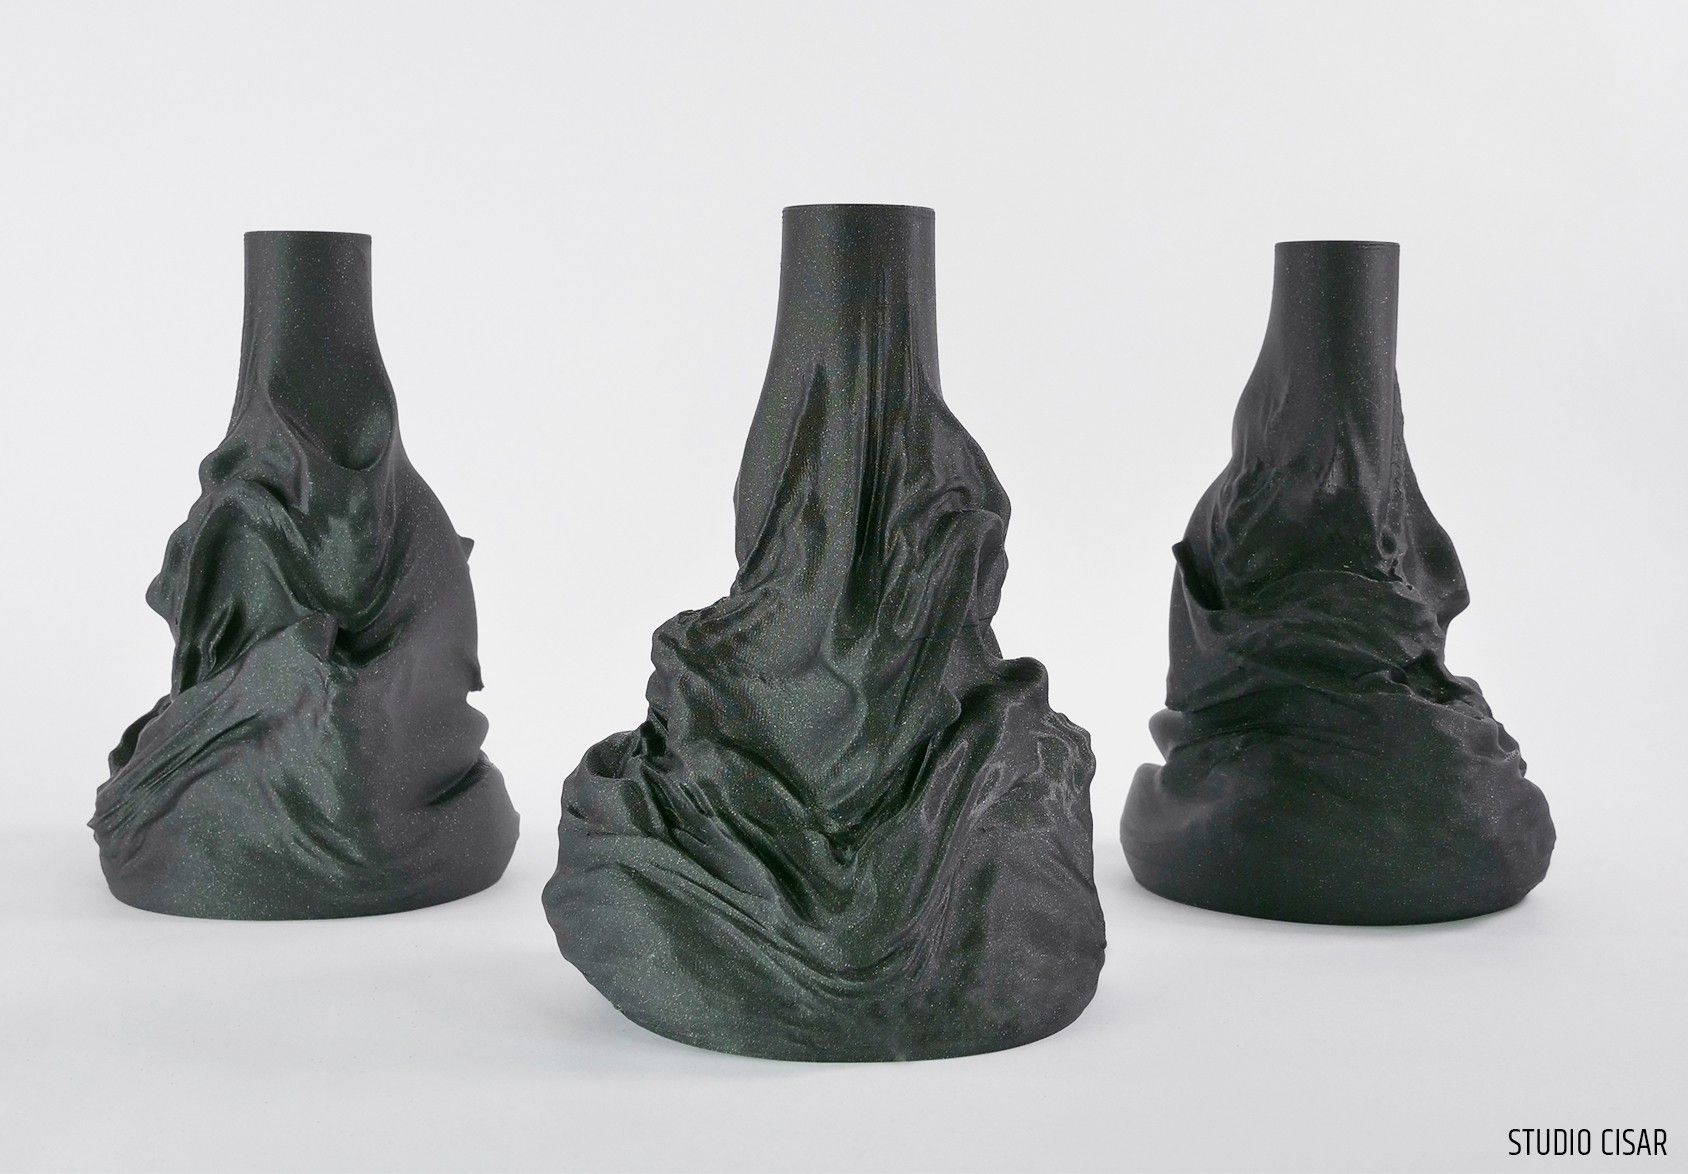 VASE 3_01.jpg Download STL file Fume Vase • 3D printer object, cisardom